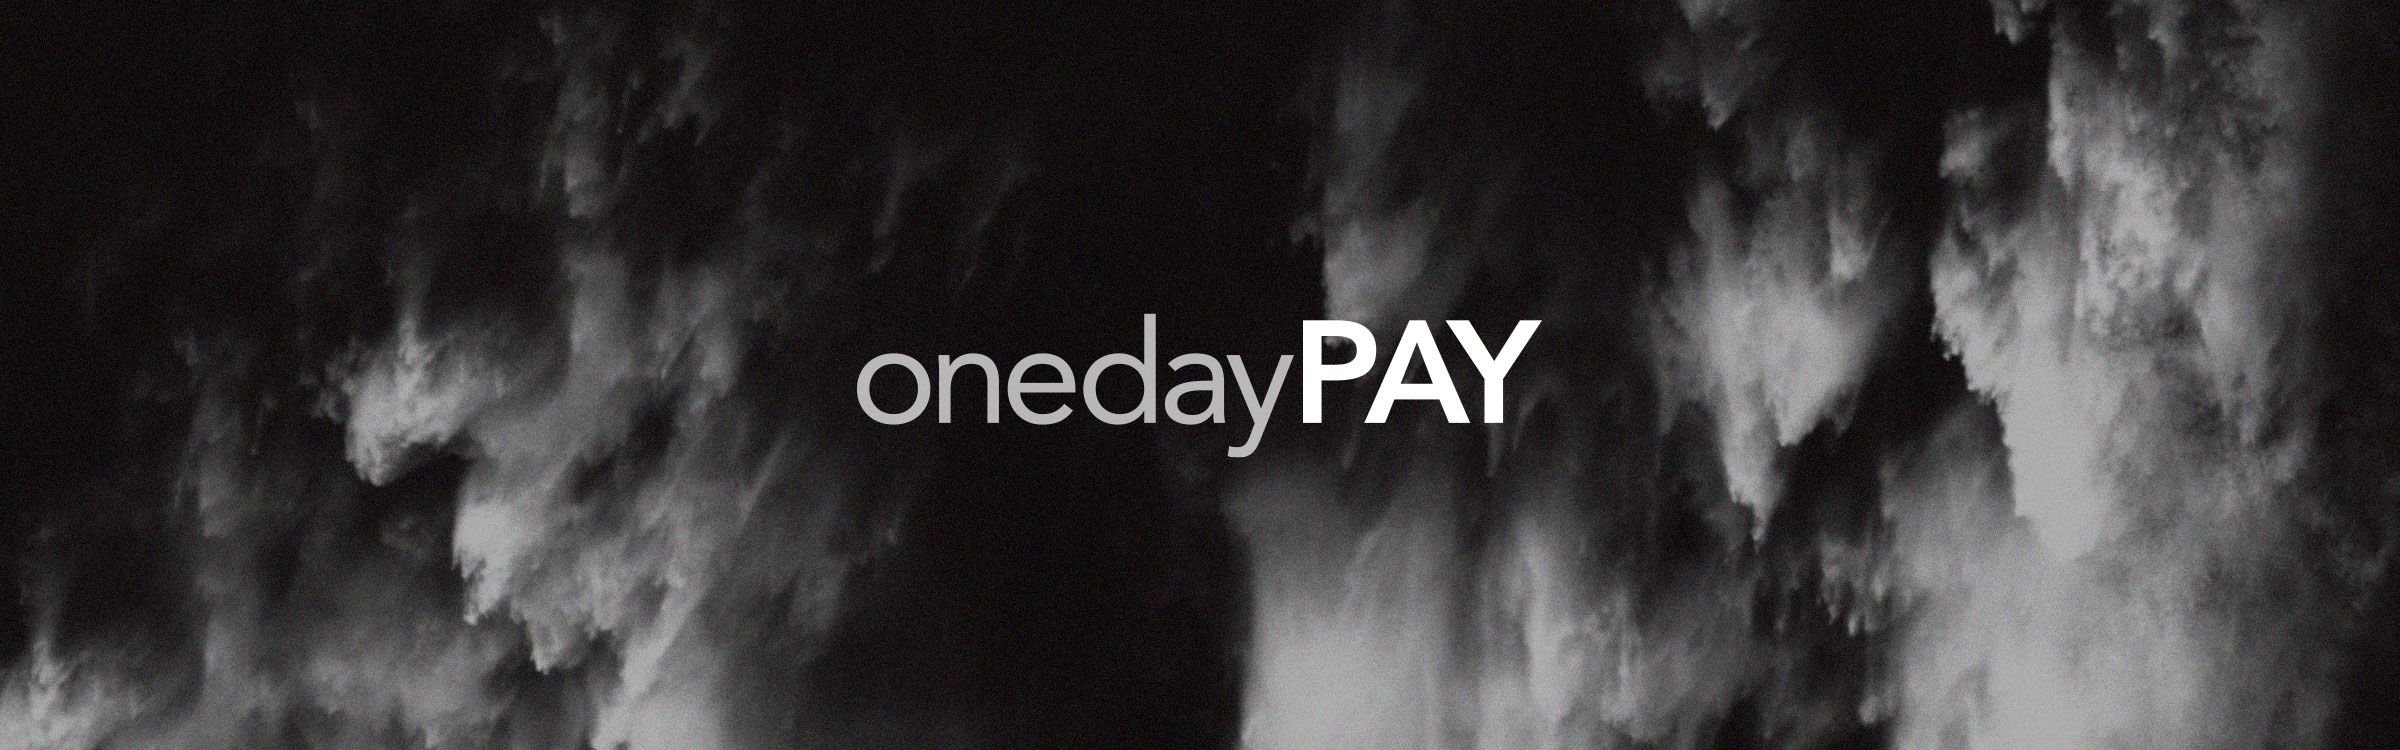 onedaypay